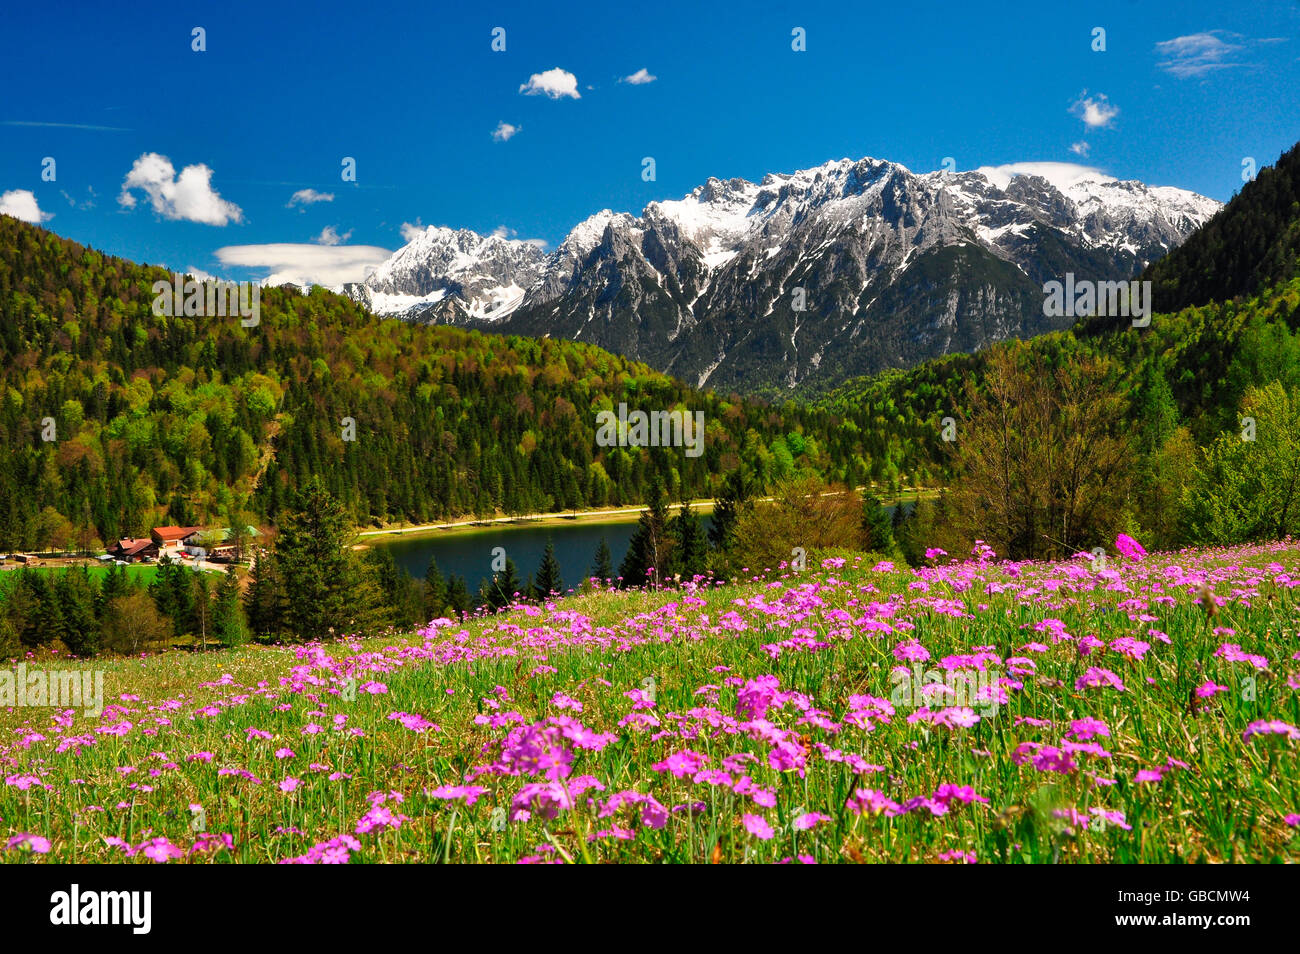 Bergsee, Ferchensee, Karwendelgebirge, Mittenwald, Bayern, Deutschland Banque D'Images